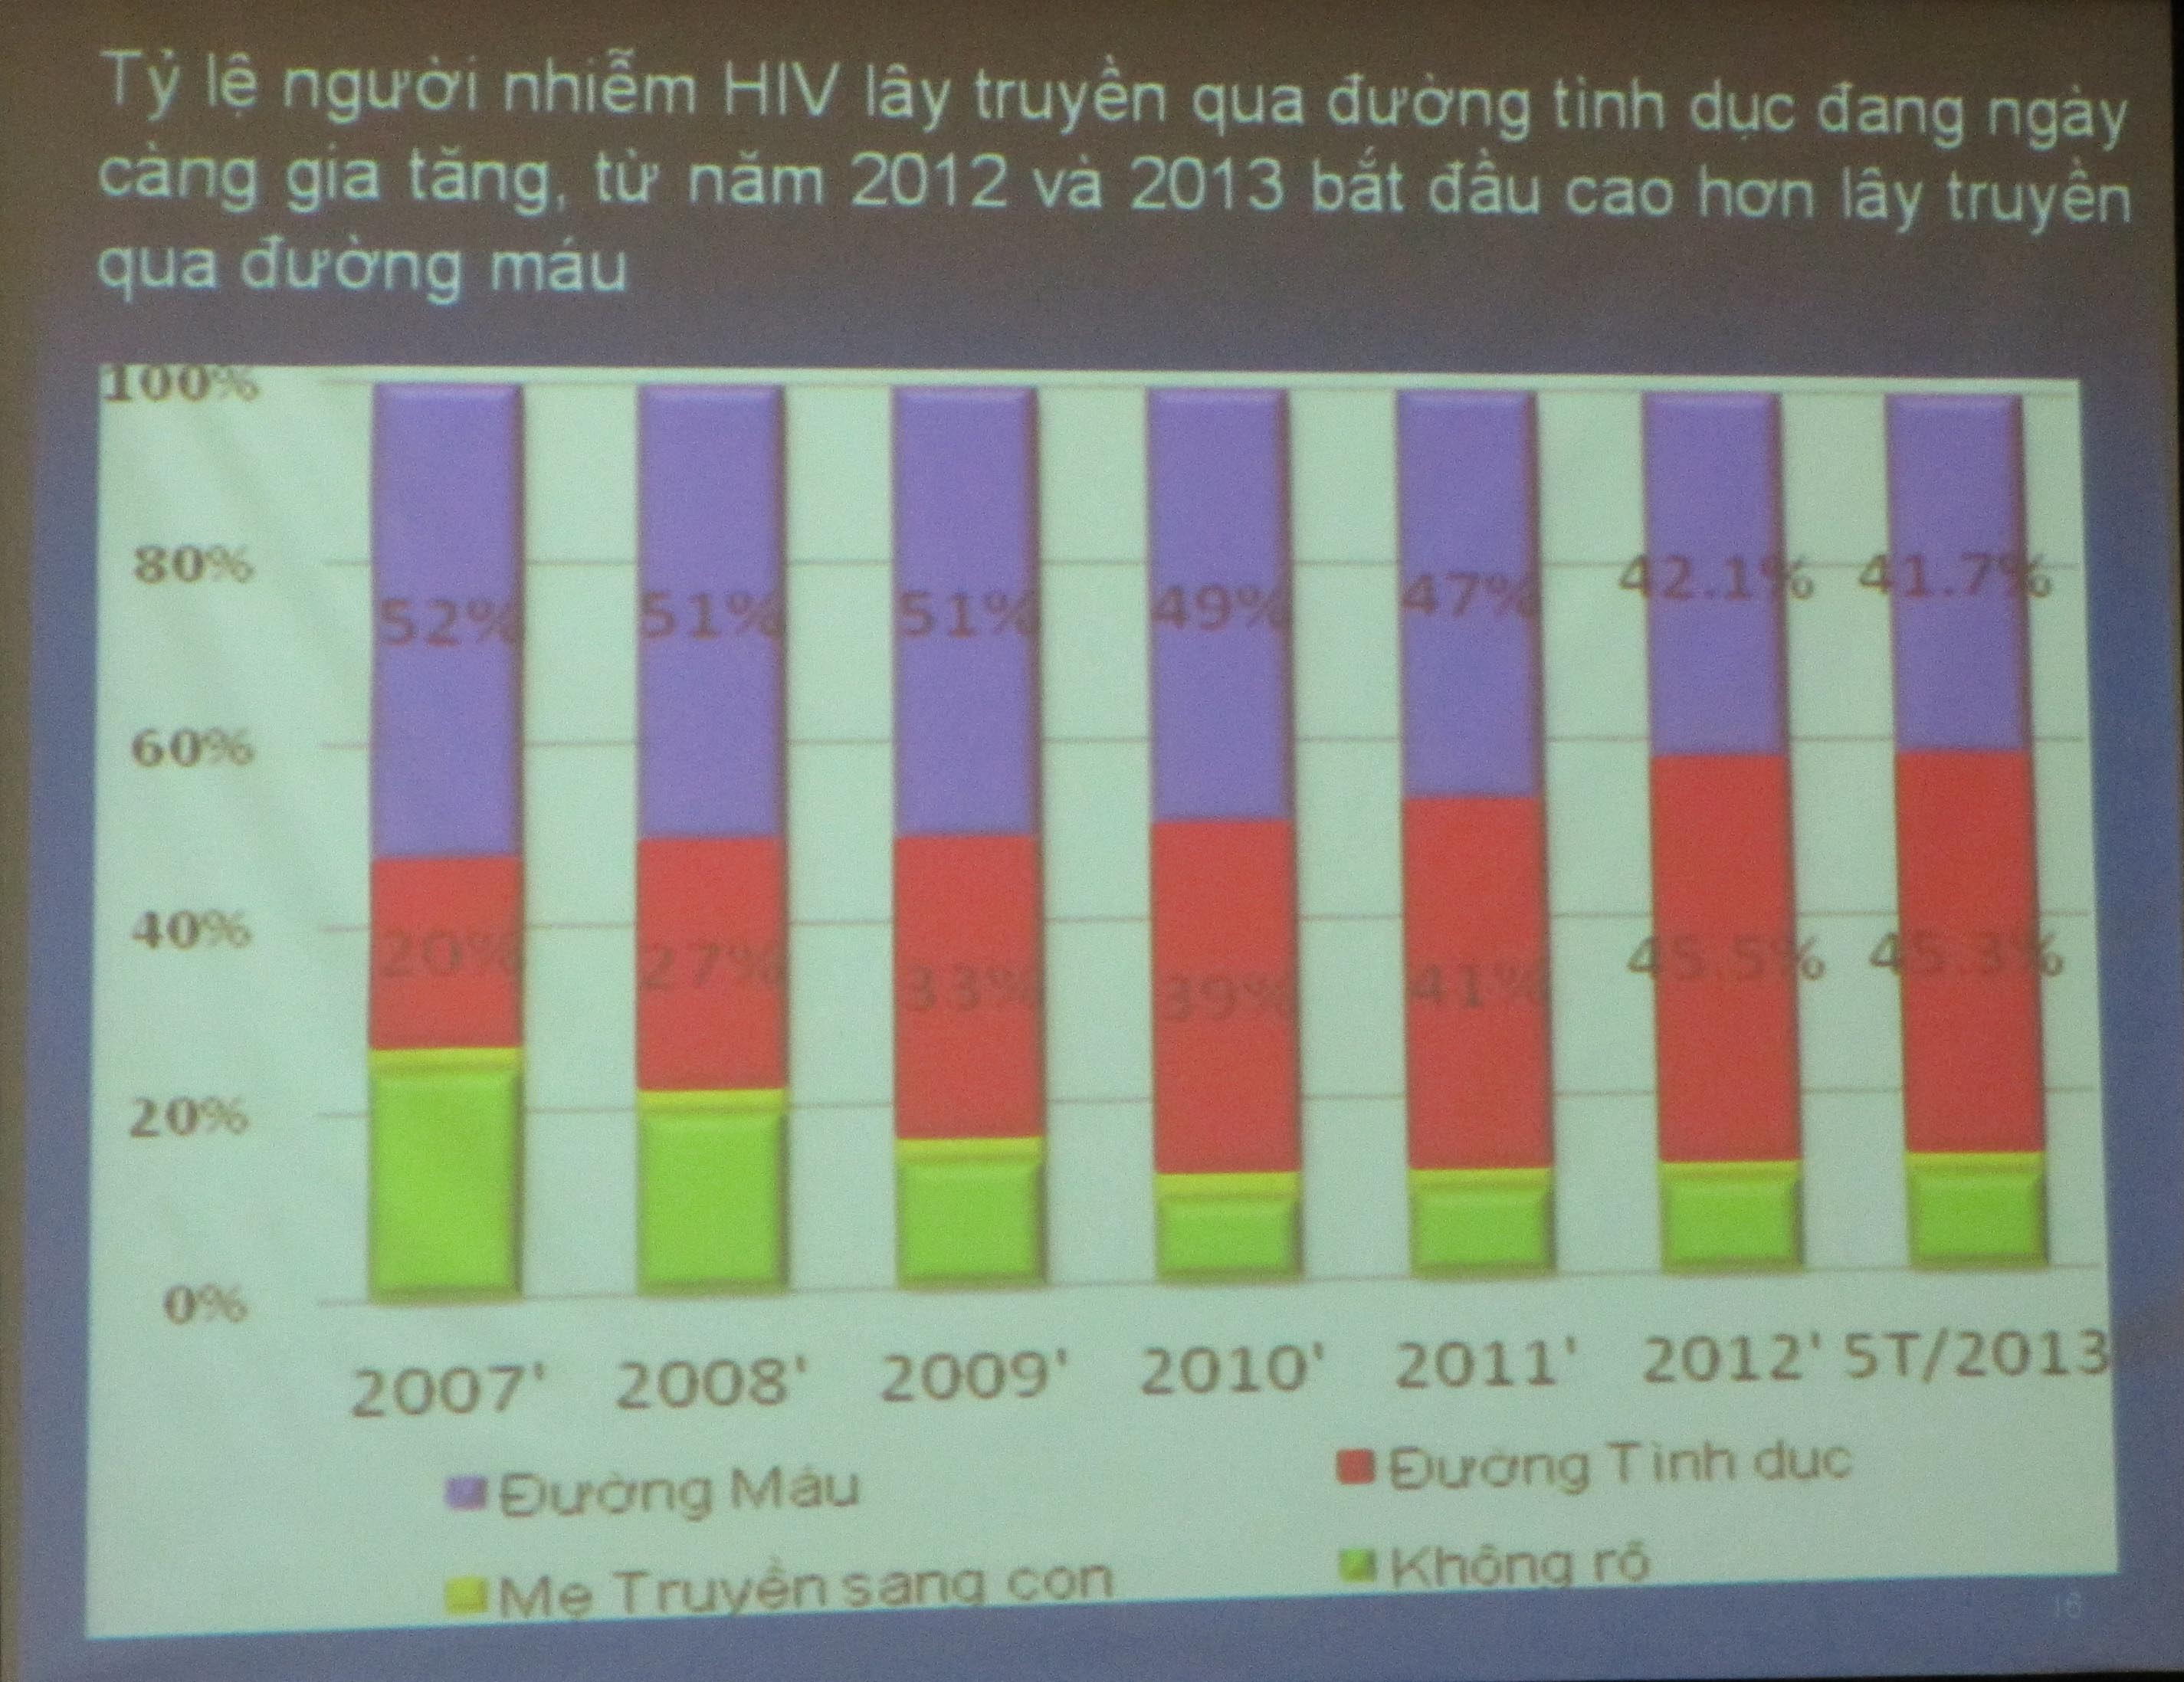 Đà Nẵng đồng thuận triển khai kế hoạch can thiệp giảm tác hại, dự phòng lây nhiễm HIV 2